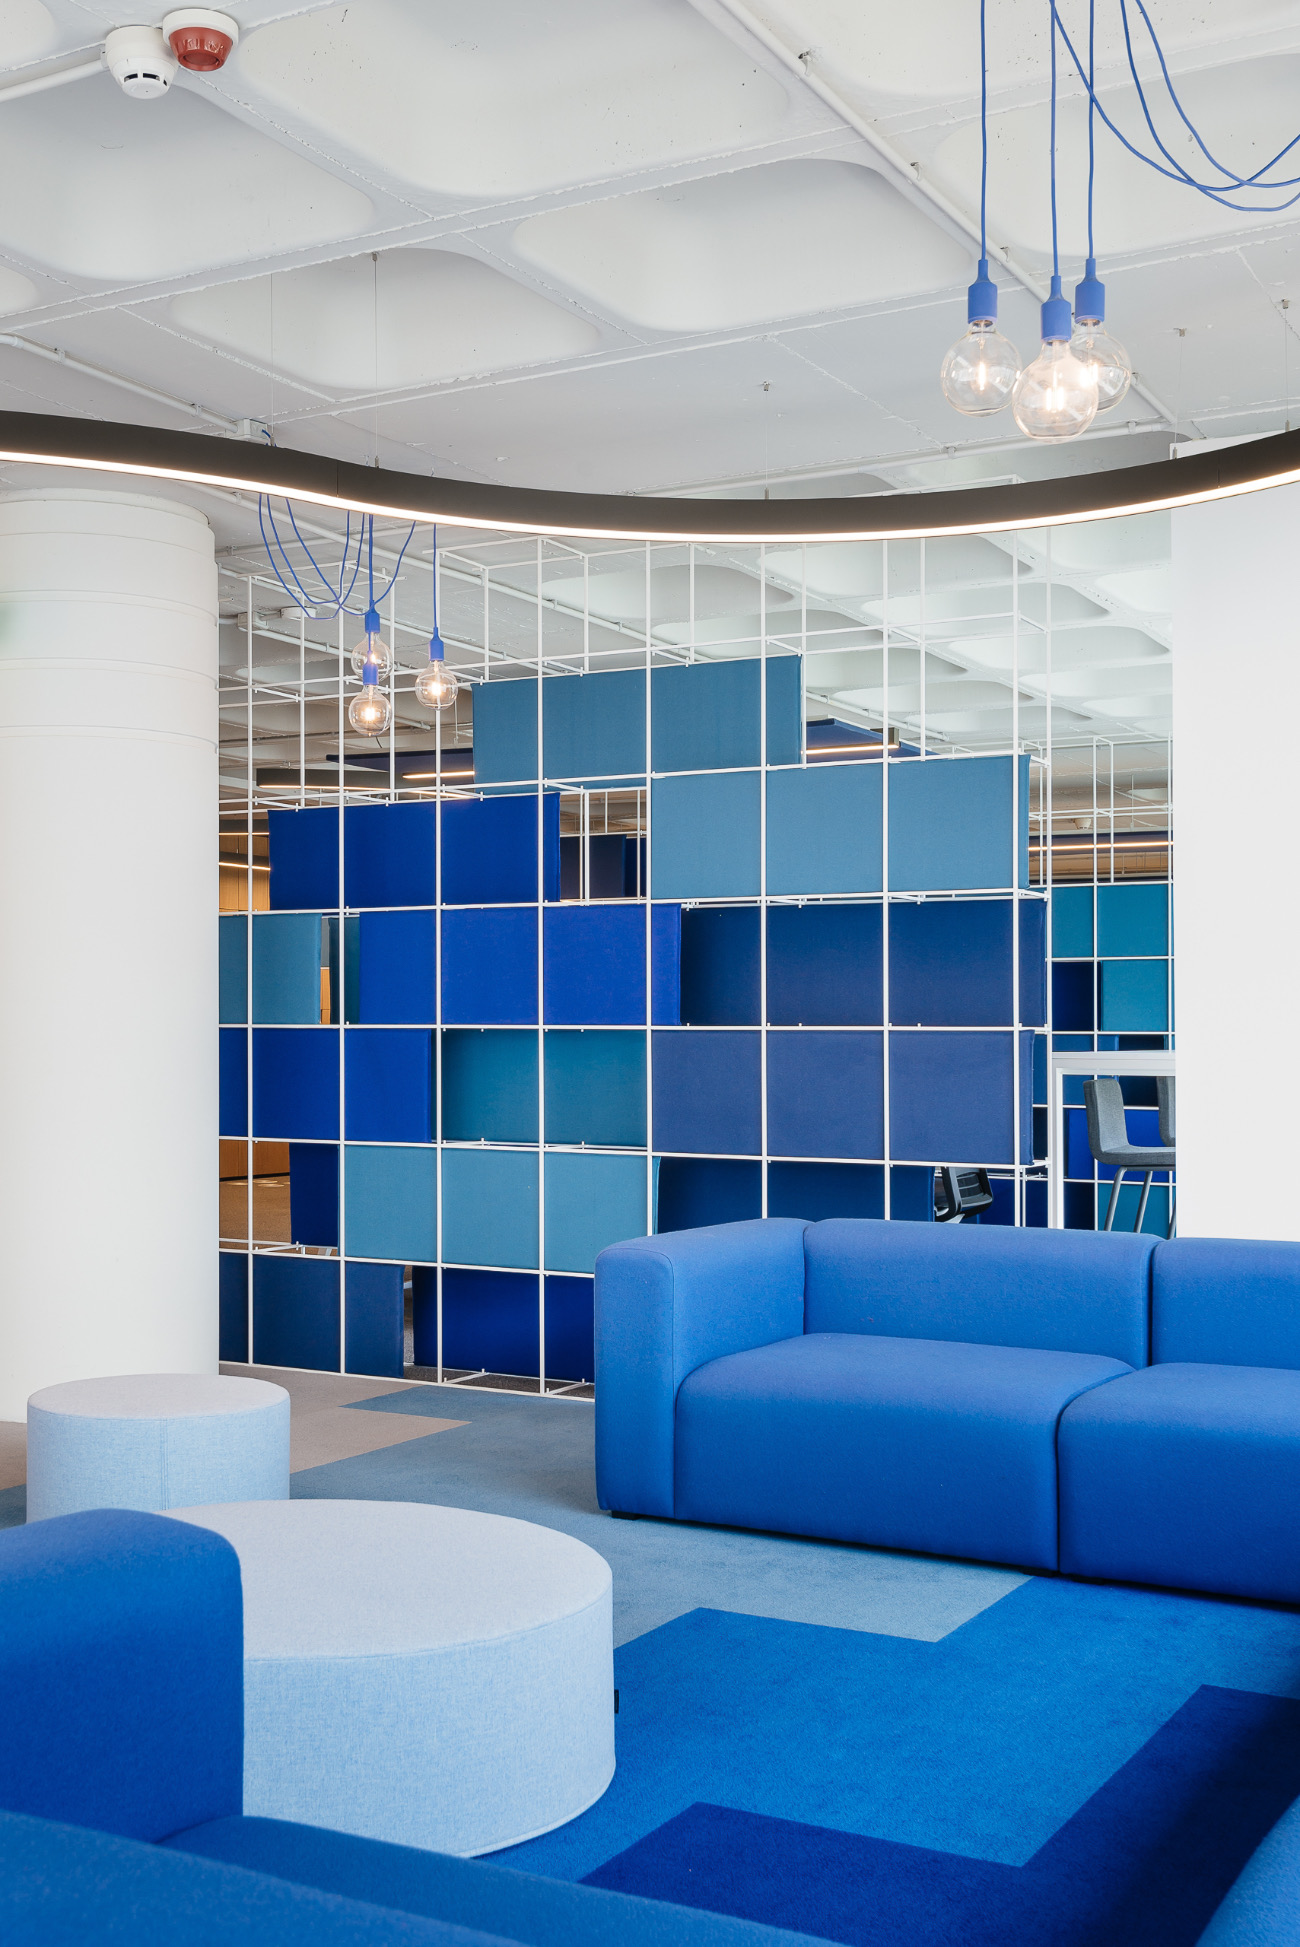 【OLXのオフィスデザイン】- ポルトガル, リスボンのリラックススペース